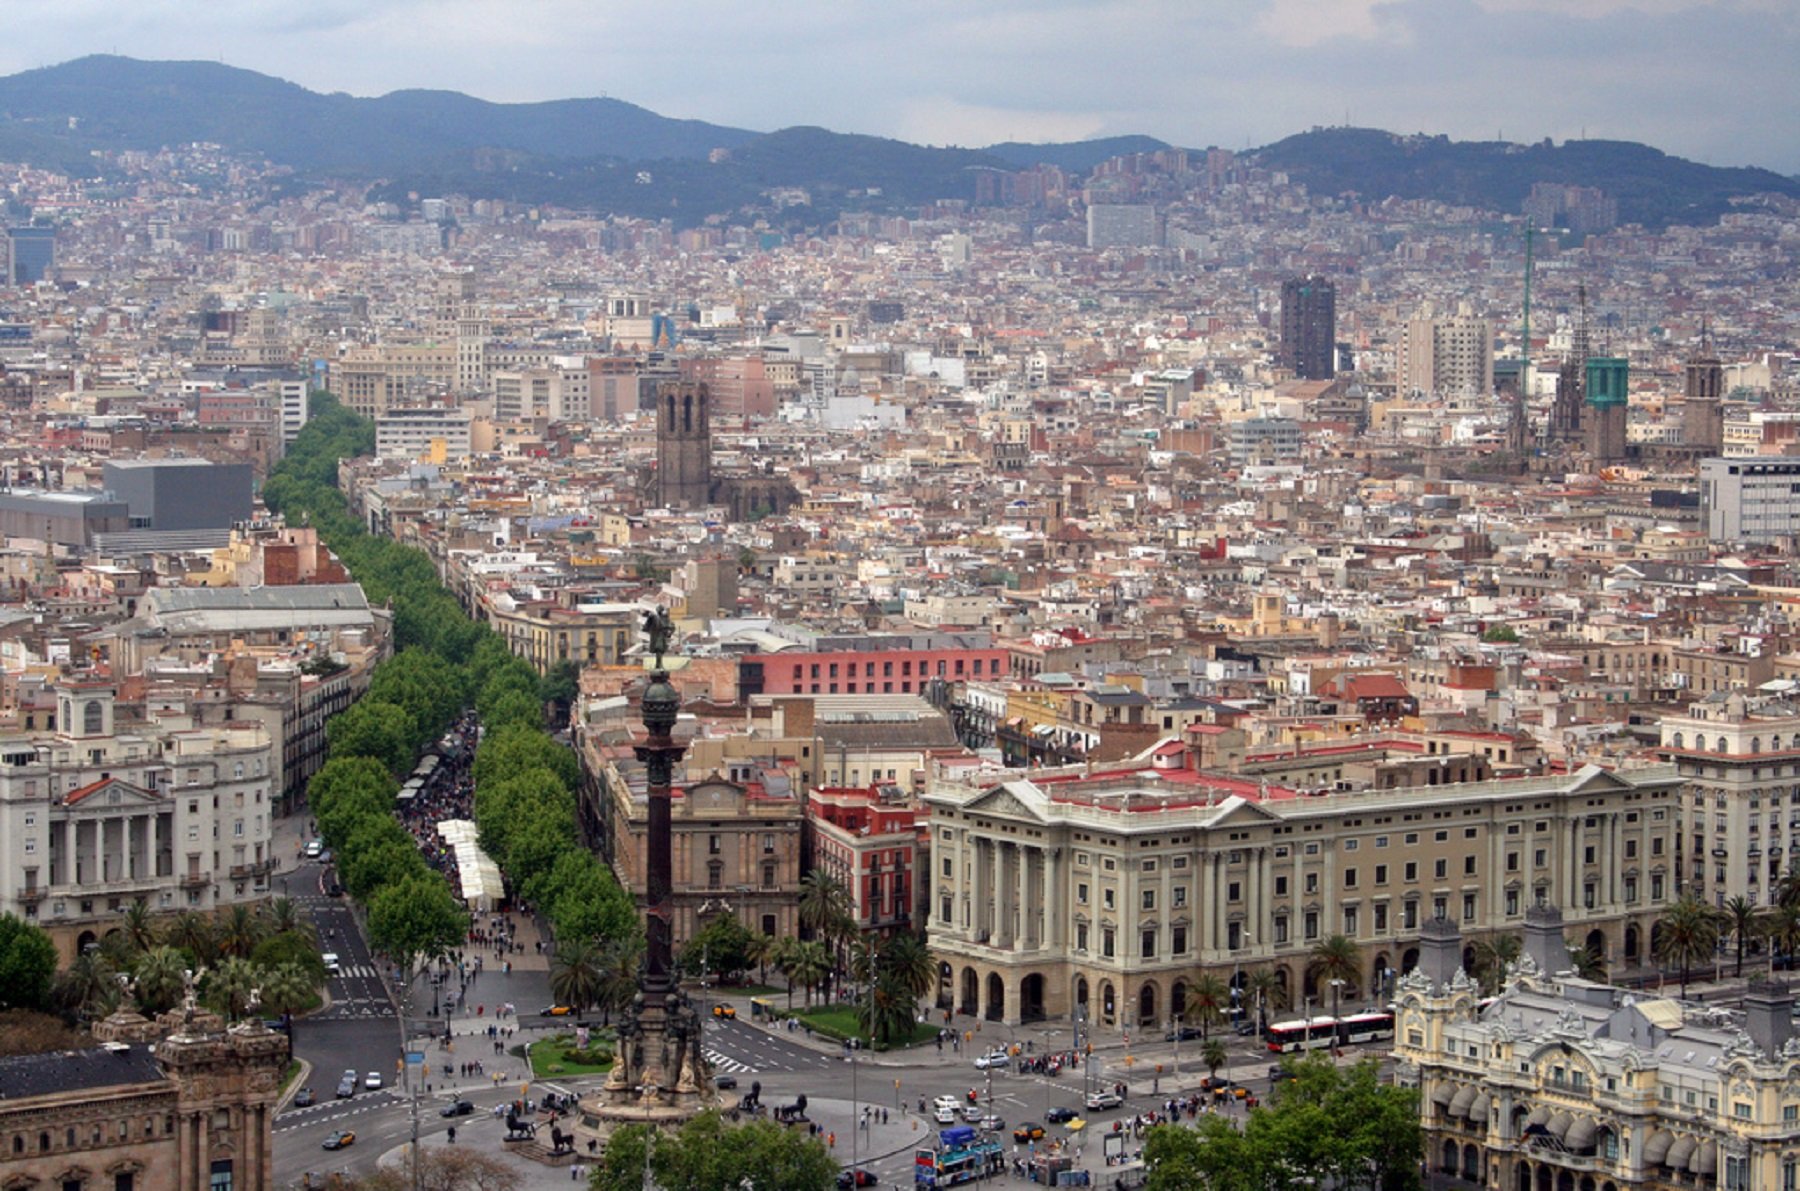 Barcelona, a l'elit científica europea, segons una prestigiosa revista